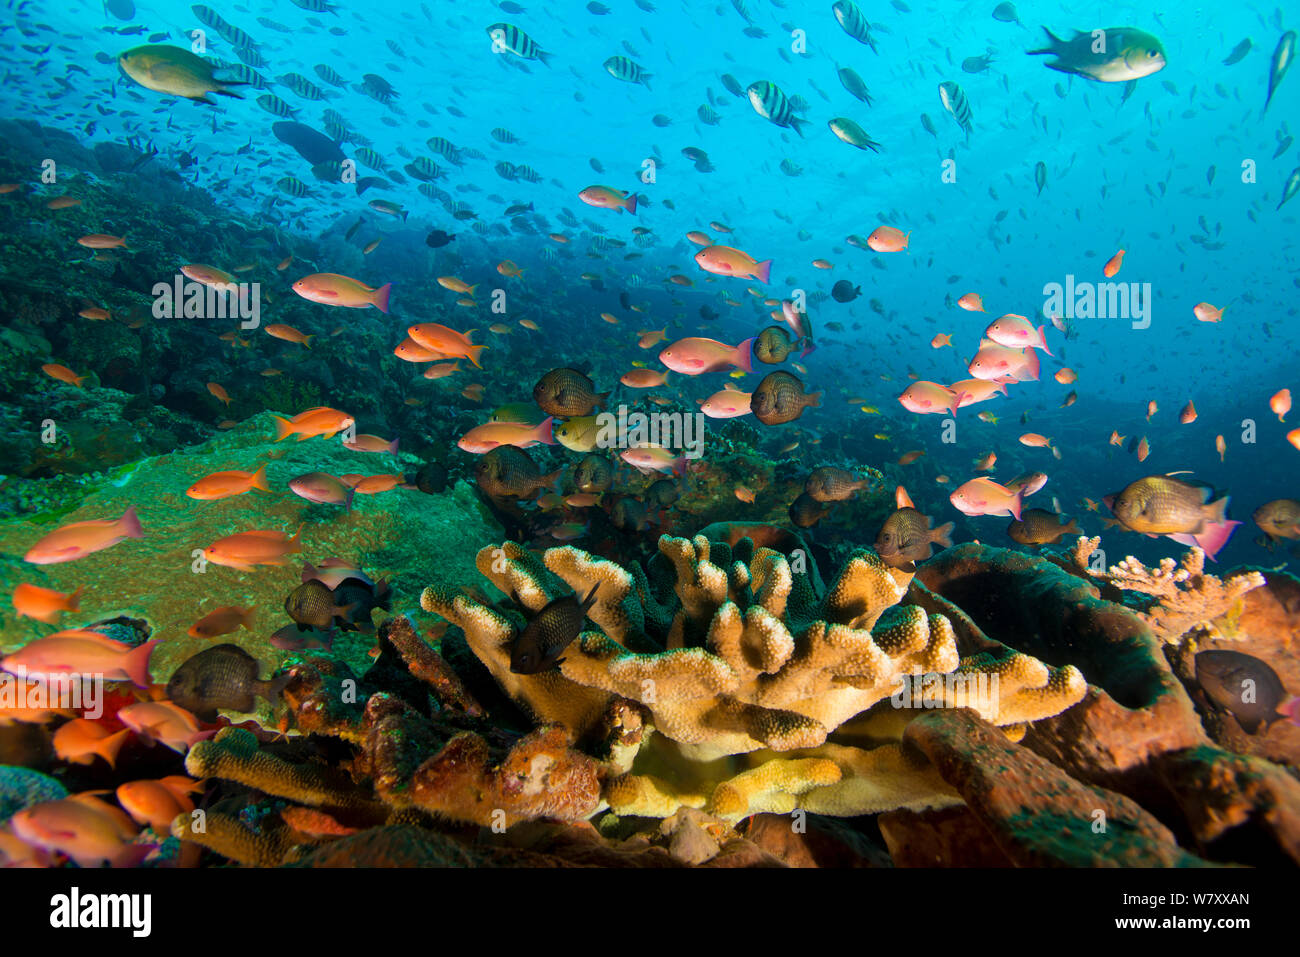 Arrecifes de coral con gran variedad de corales, esponjas, equinodermos y peces, el Parque Nacional de Komodo (Indonesia). Foto de stock